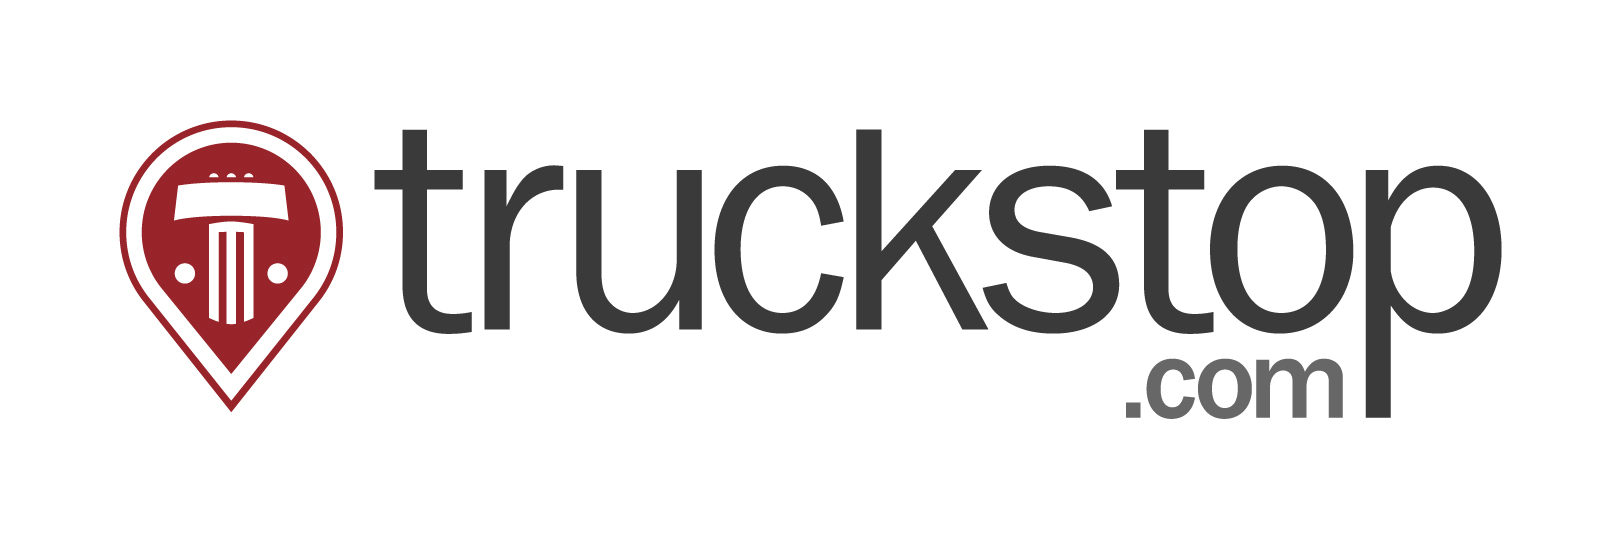 Truckstop.com Promot